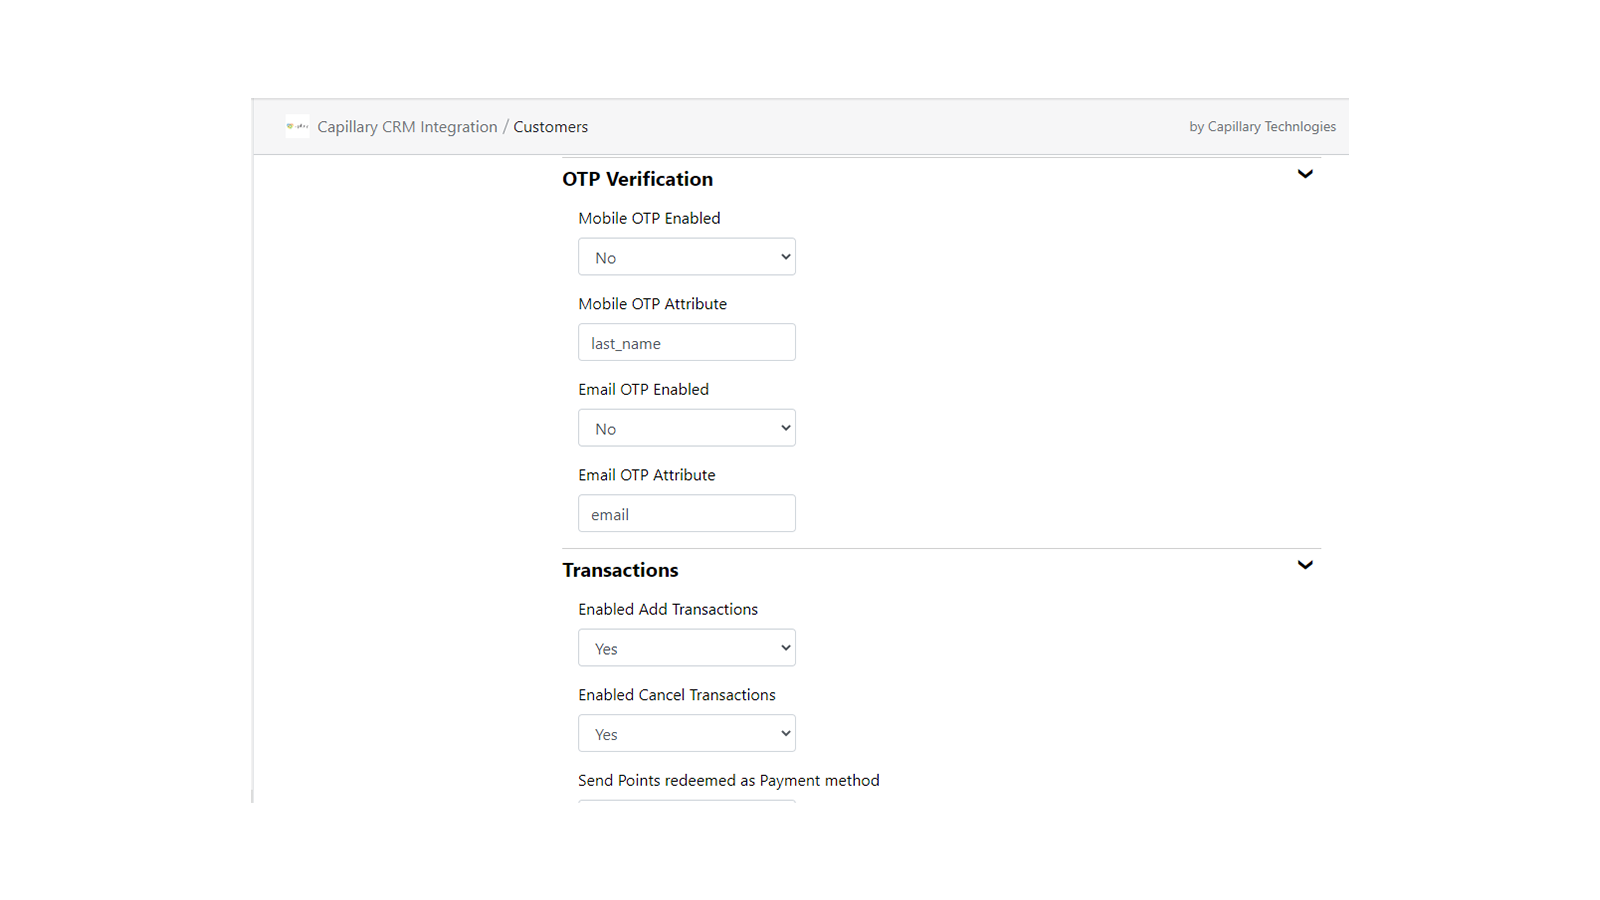 Admin OTP Verification & Transaction Configuration